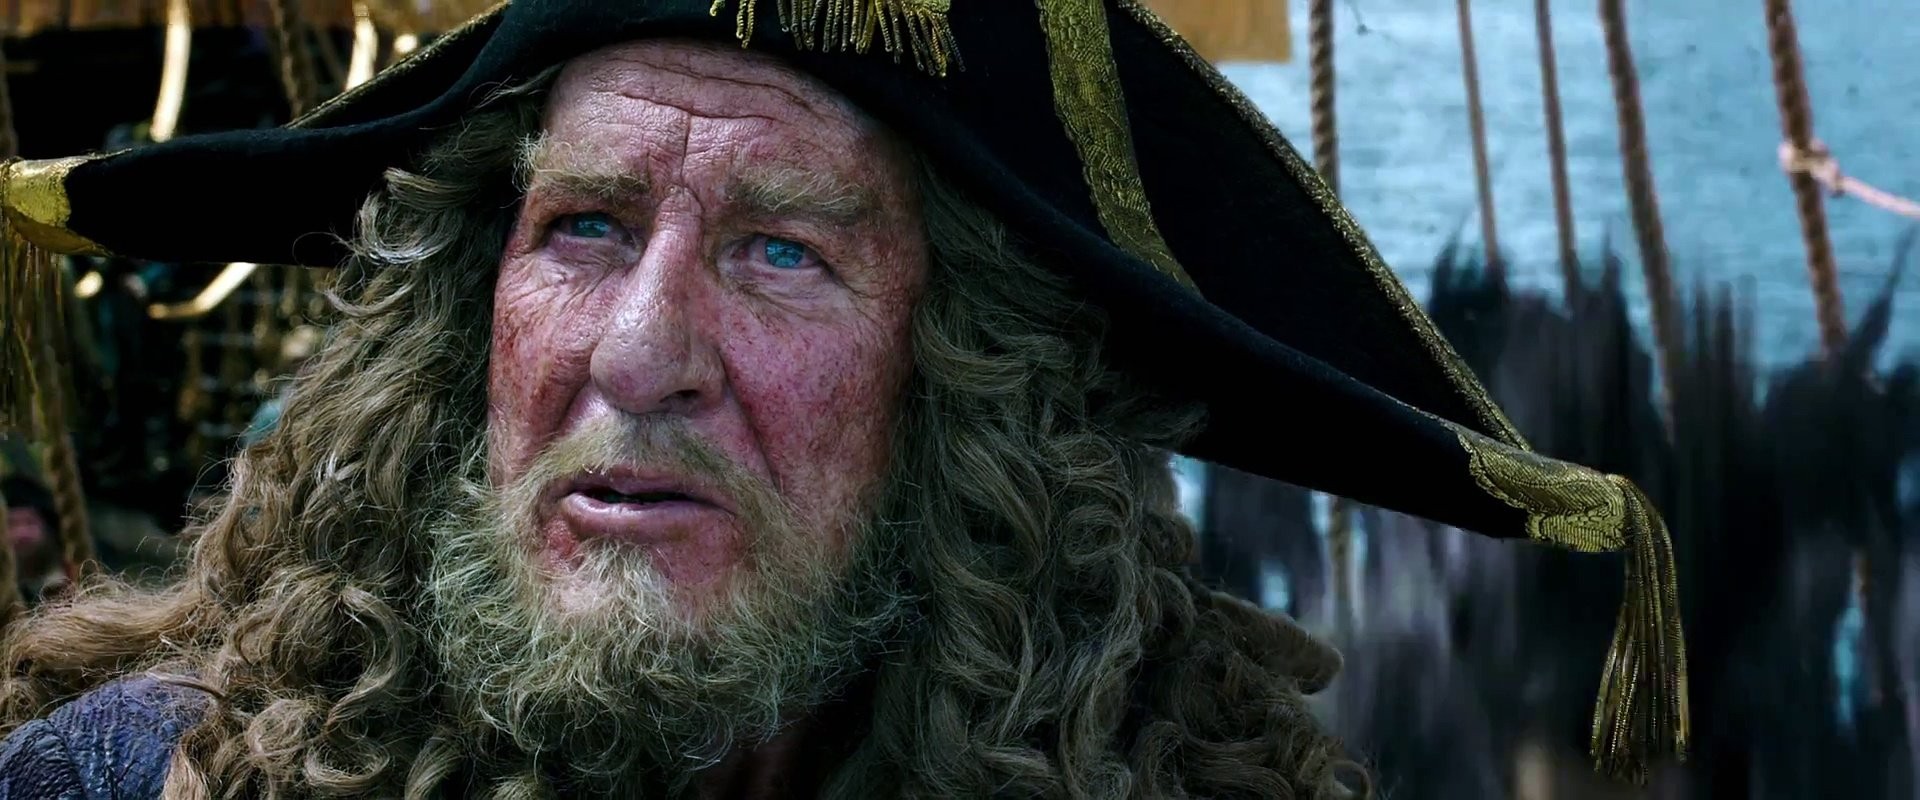 geoffrey Rush Tells Tales Of Pirates And Johnny Depp Njcom